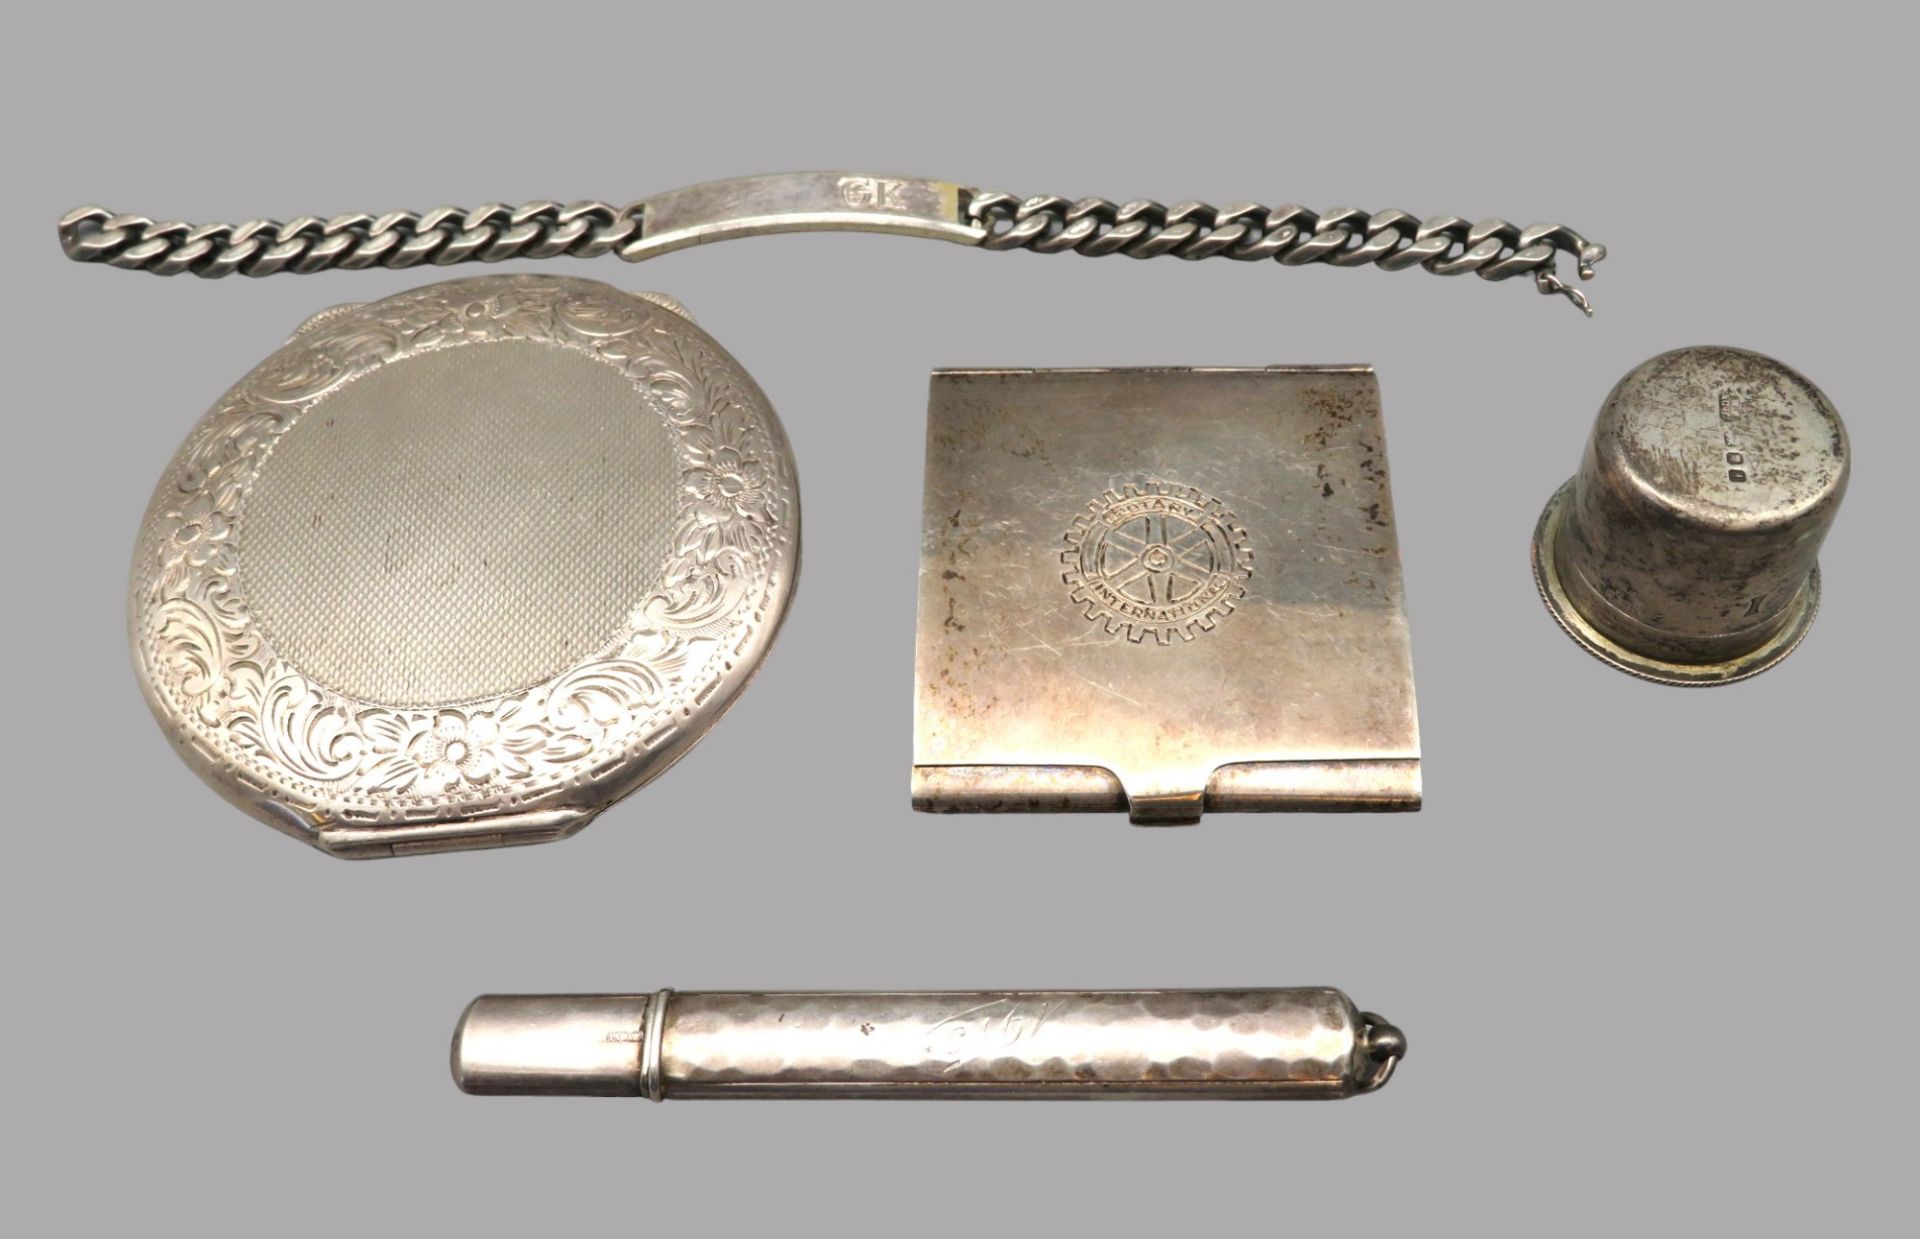 5 teiliges Konvolut diverser Silberobjekte, bestehend aus Streichholzbehälter (Rotary), Schraubdose